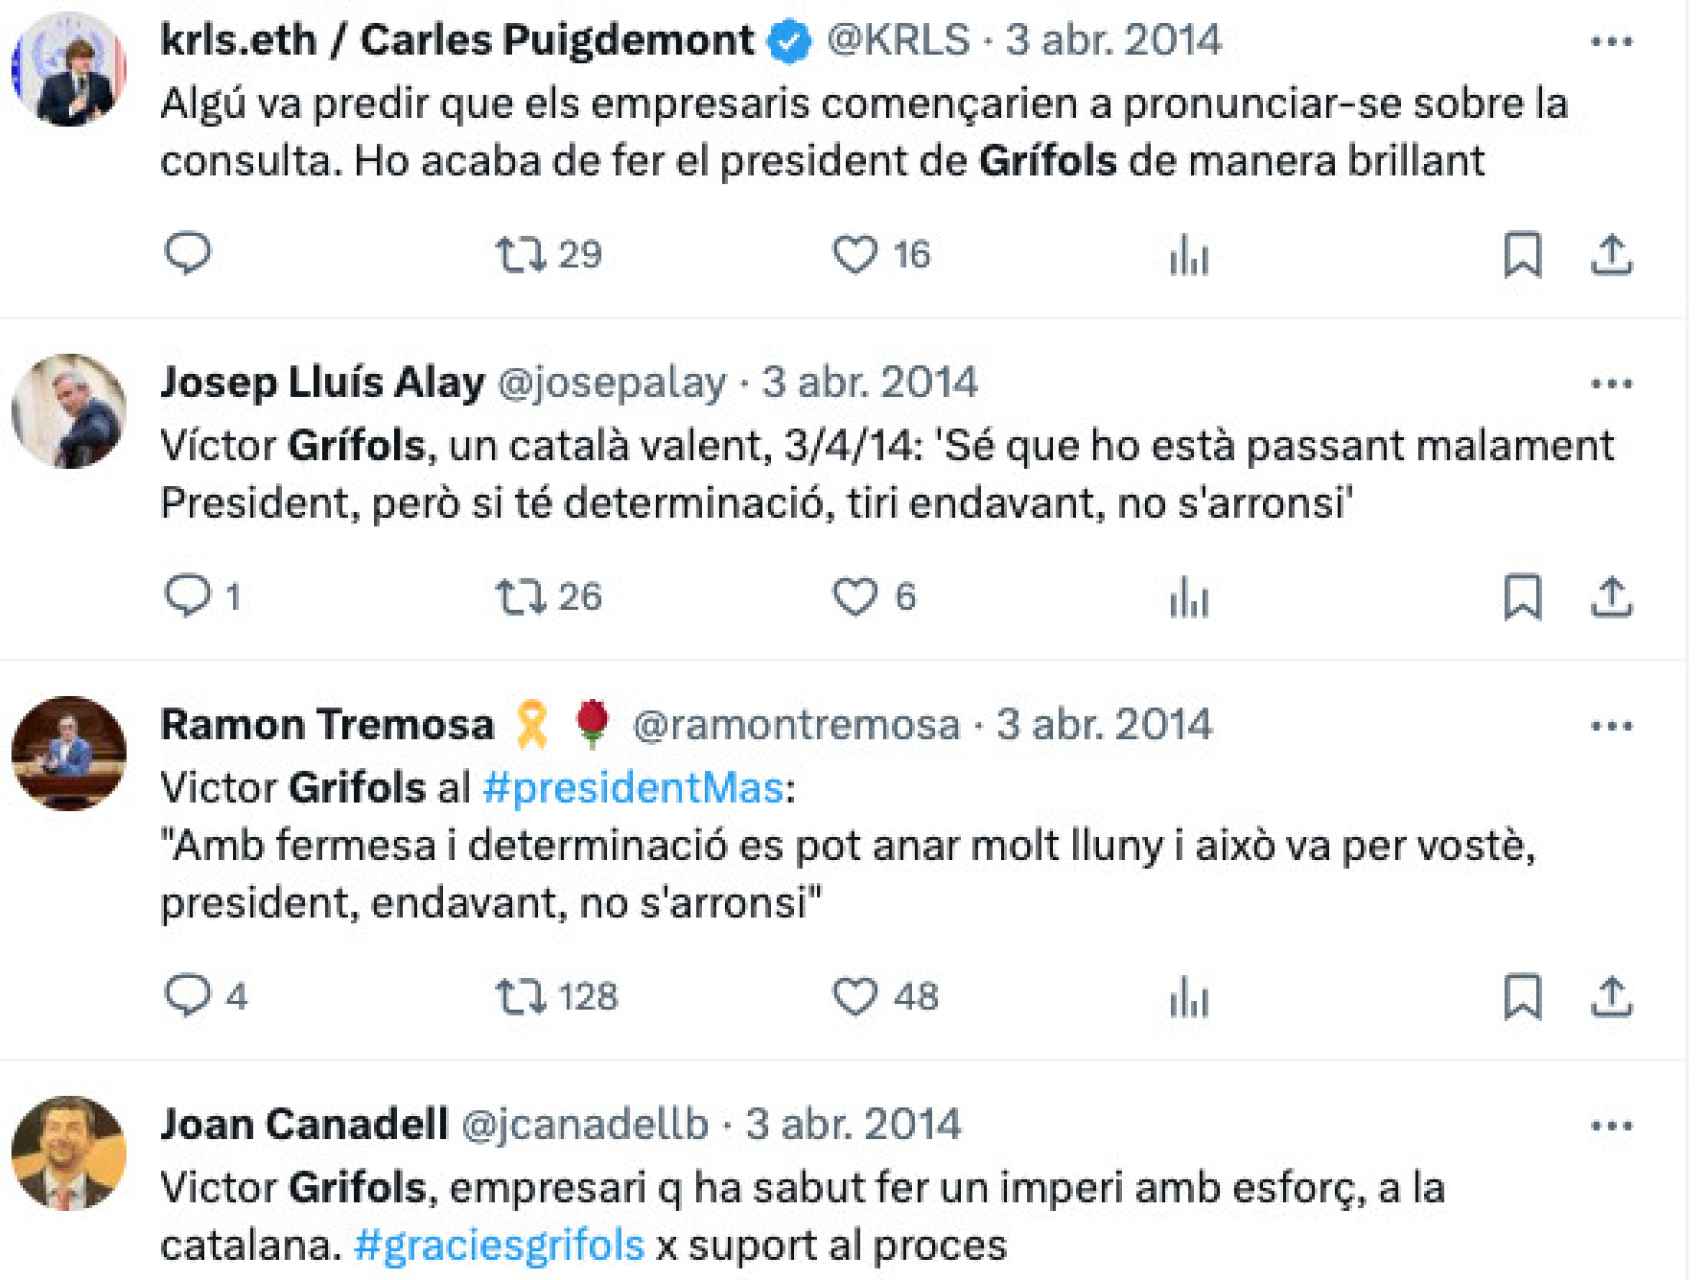 Tuits de agradecimiento a Víctor Grífols por su respaldo a Artur Mas por parte de Puigdemont, Alay, Ramon Tremosa y Joan Canadell